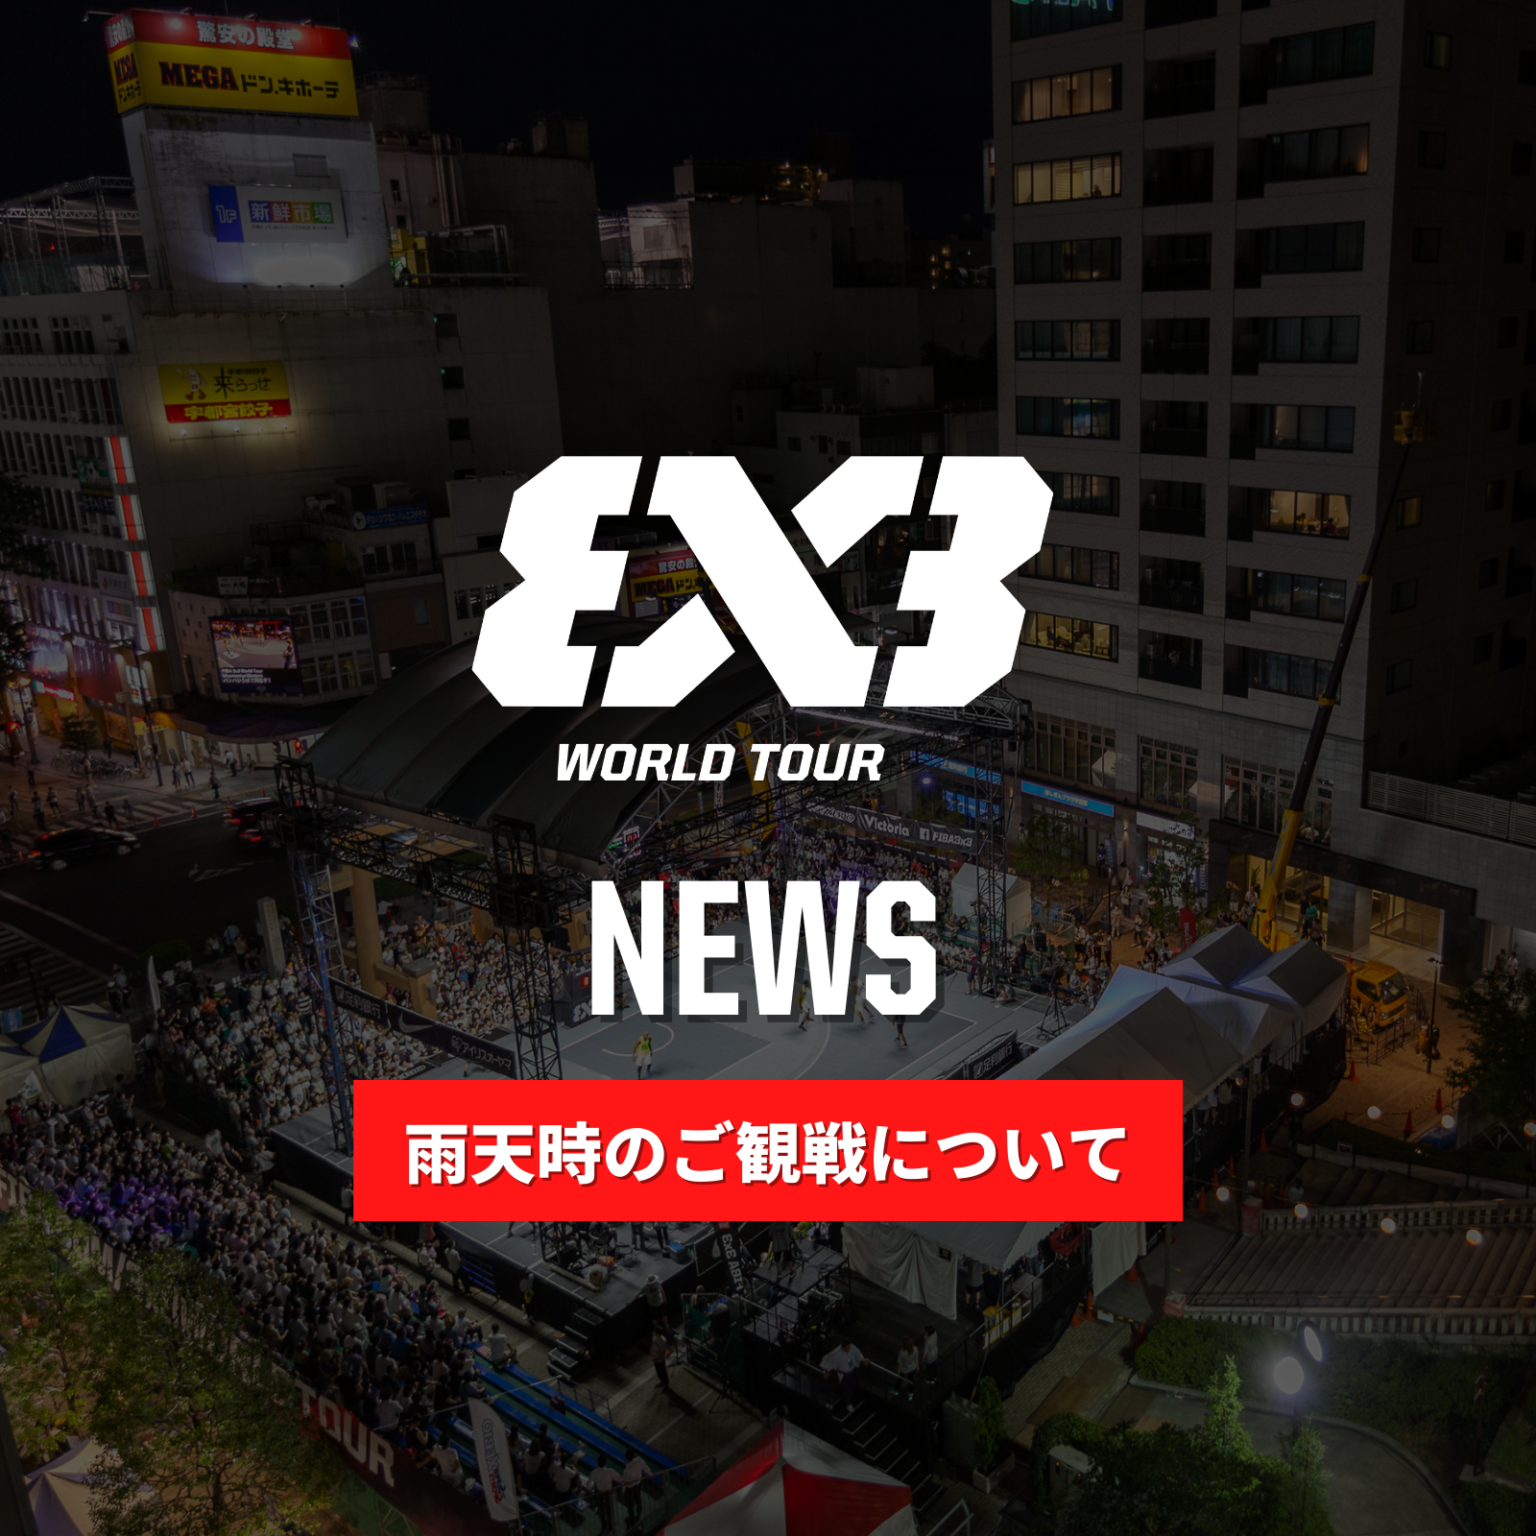 fiba 3x3 world tour utsunomiya